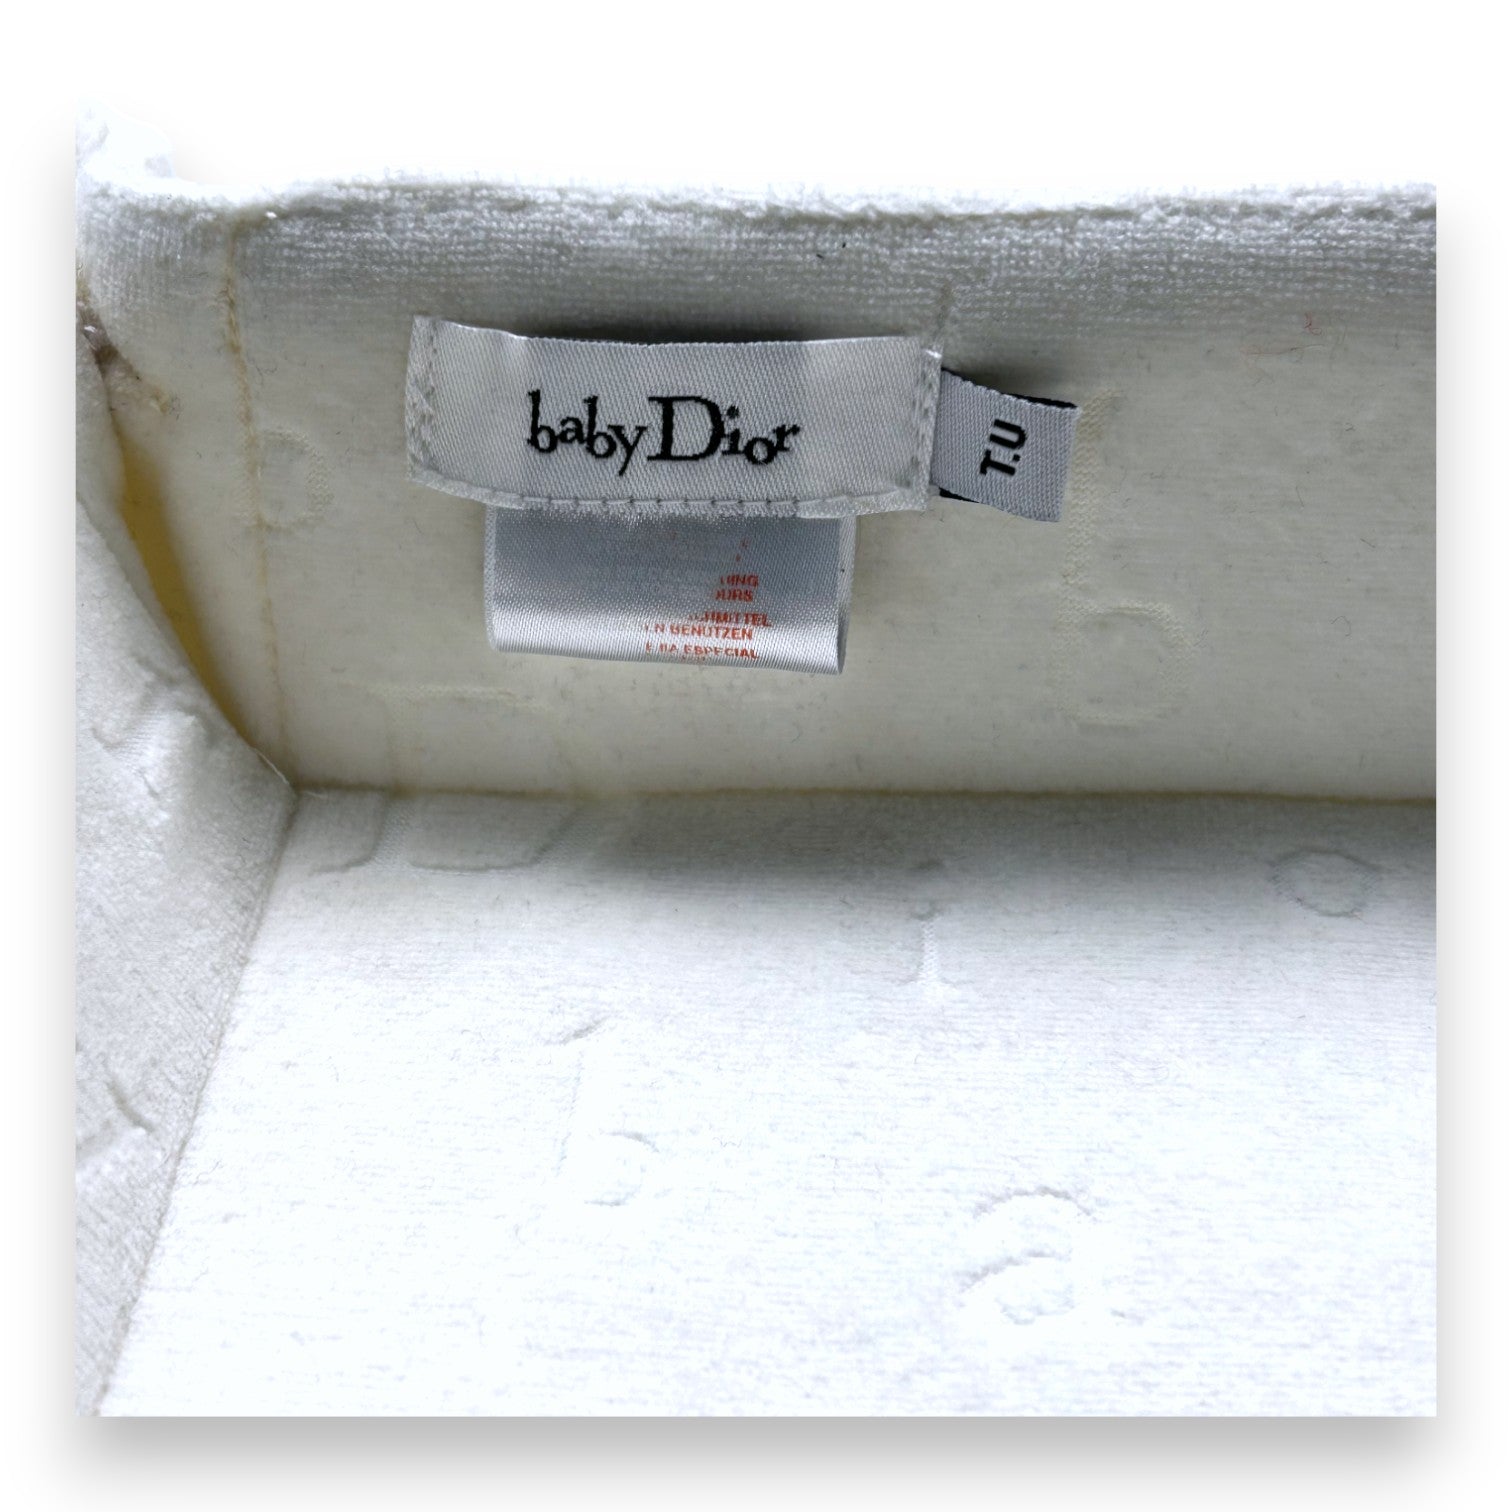 BABY DIOR - Vide poche blanc en velours inscriptions "Baby Dior"